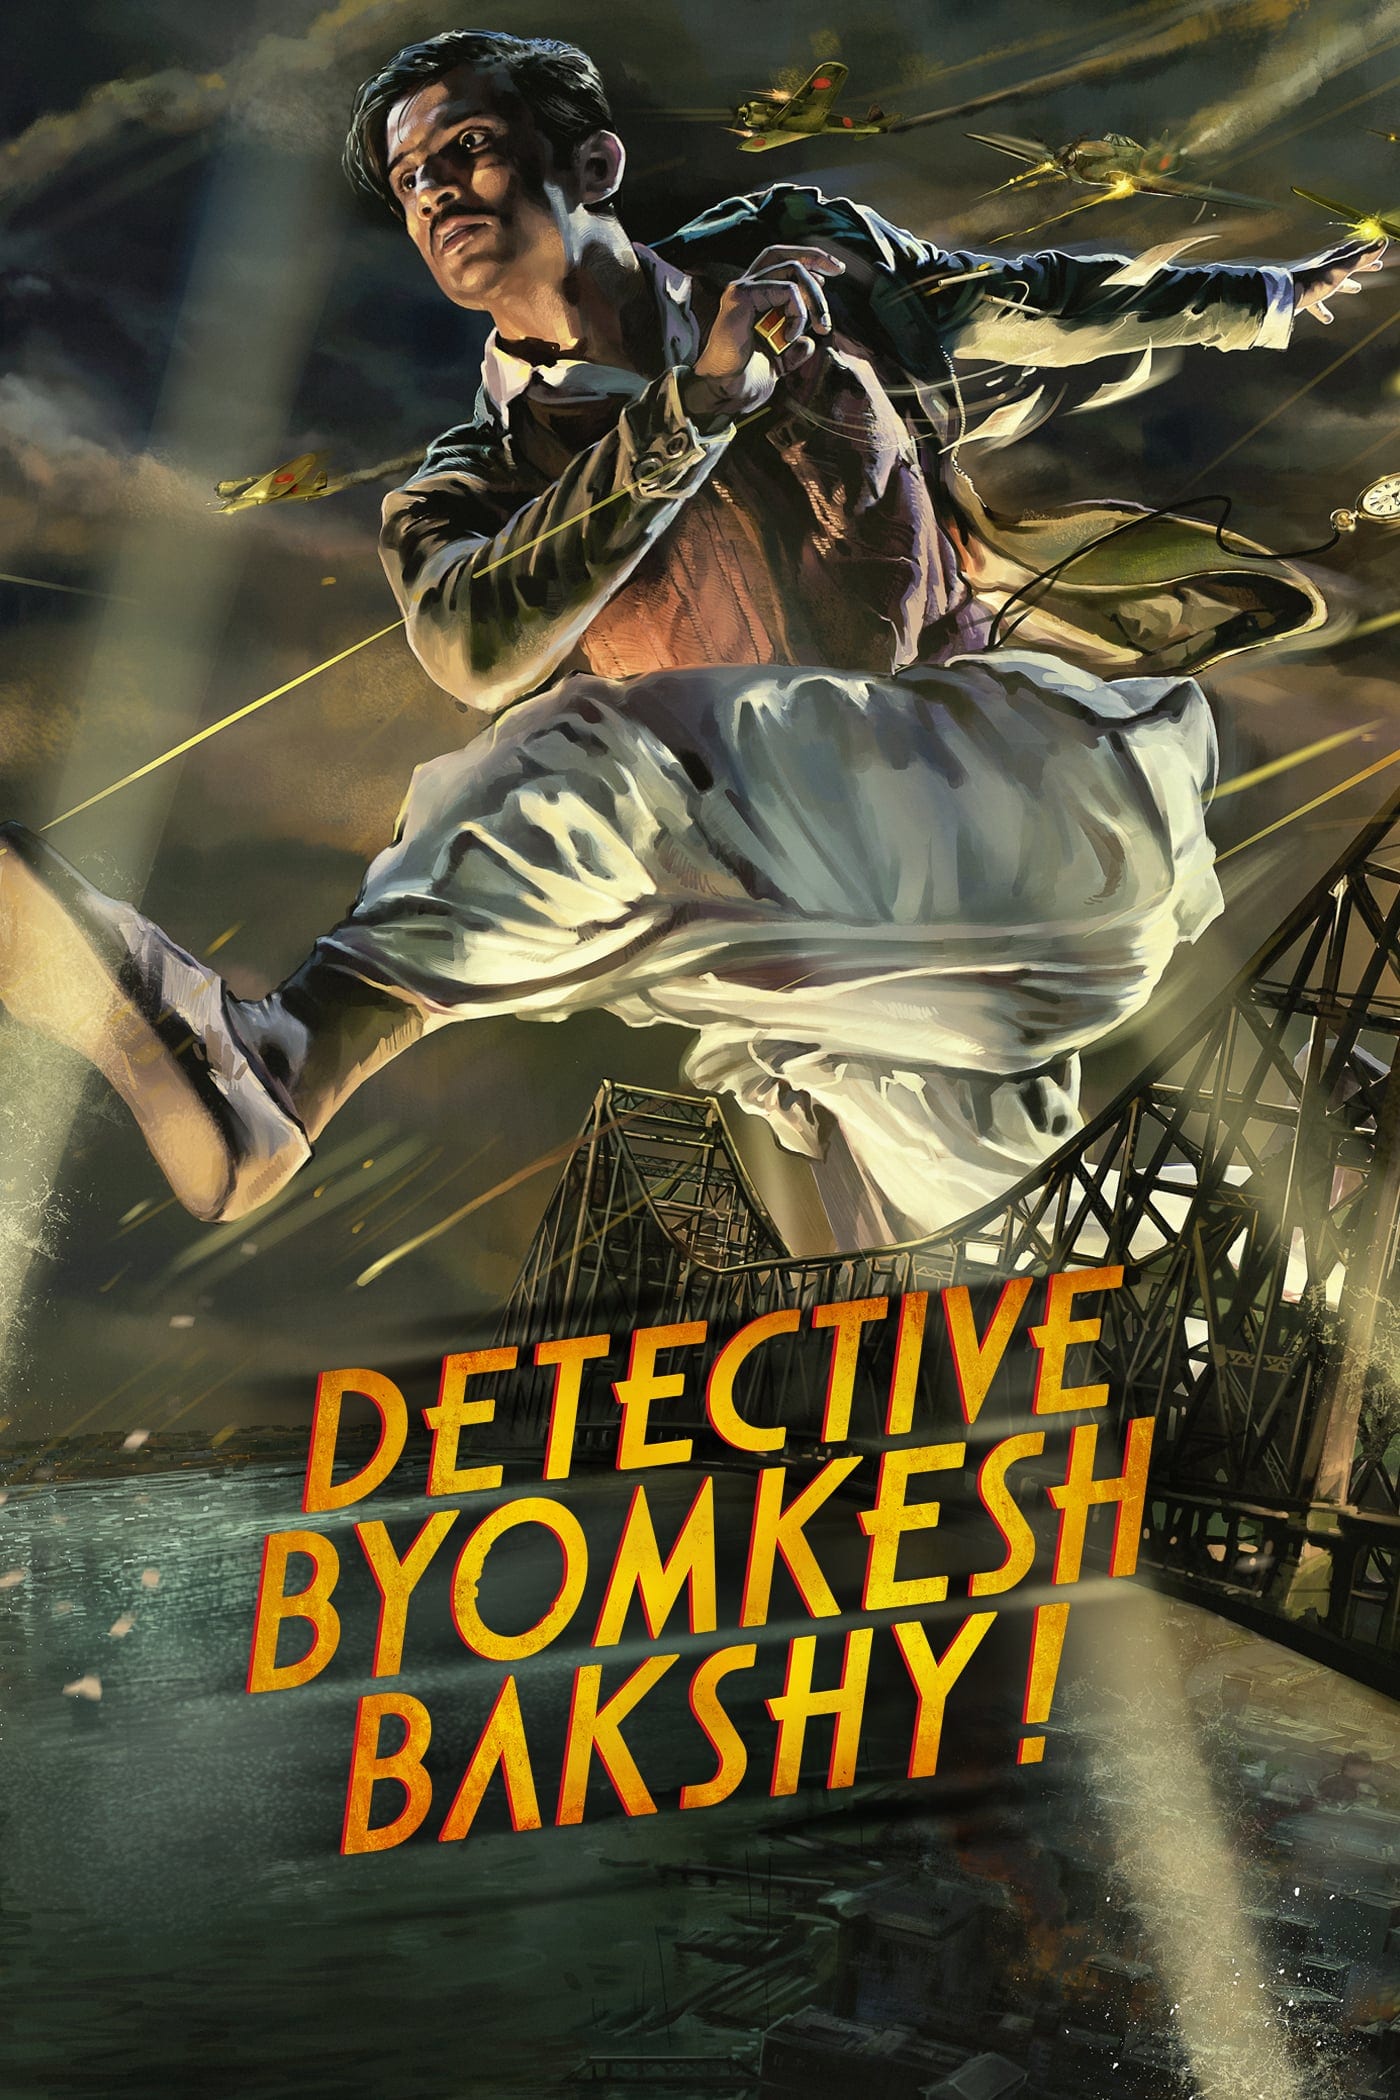 Poster for the movie "Detective Byomkesh Bakshy!"